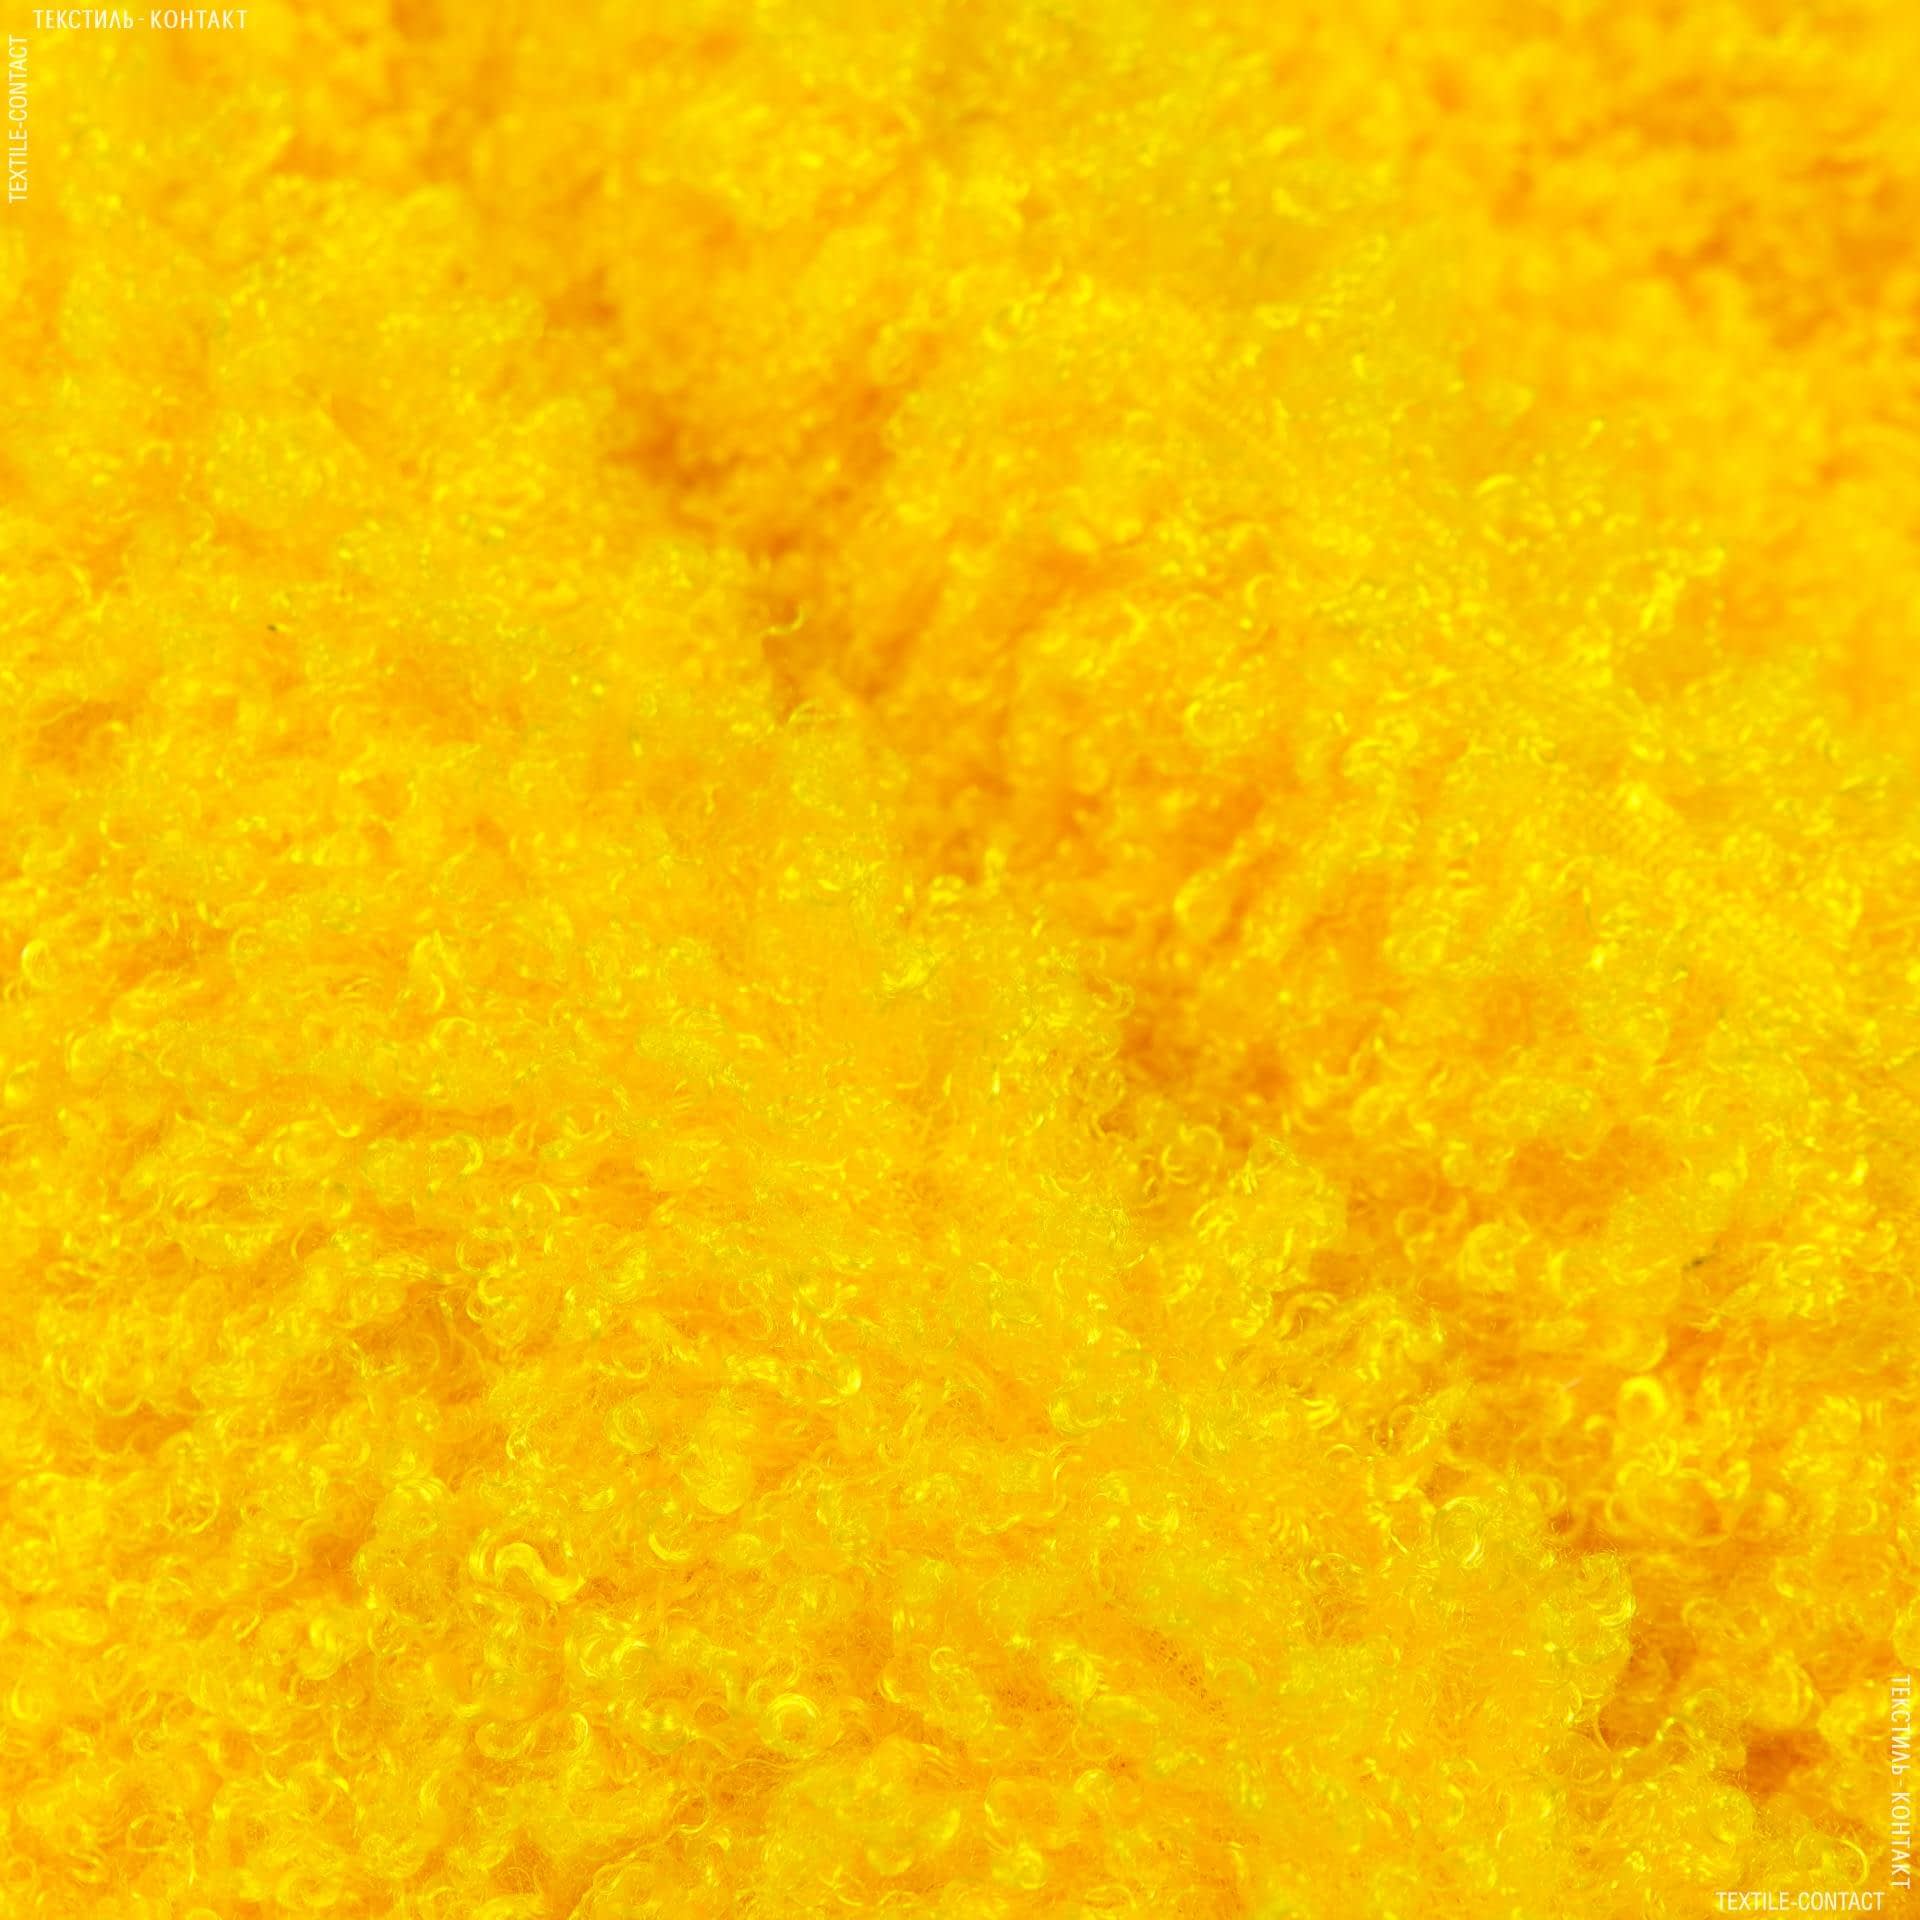 Тканини хутро - Хутро букле жовтий